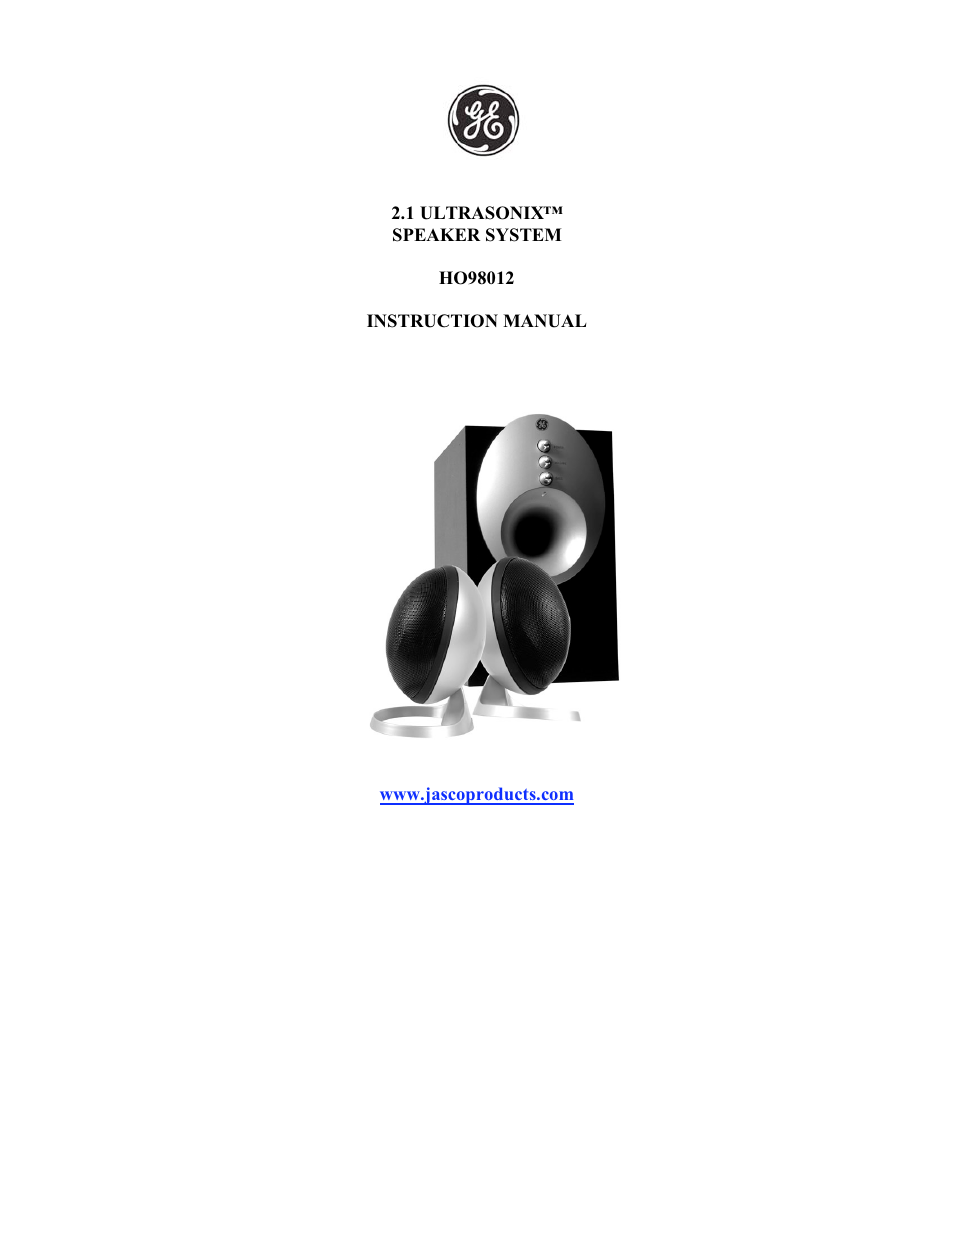 GE 98012 GE UltraSonic 2.1 Speakers User Manual | 6 pages